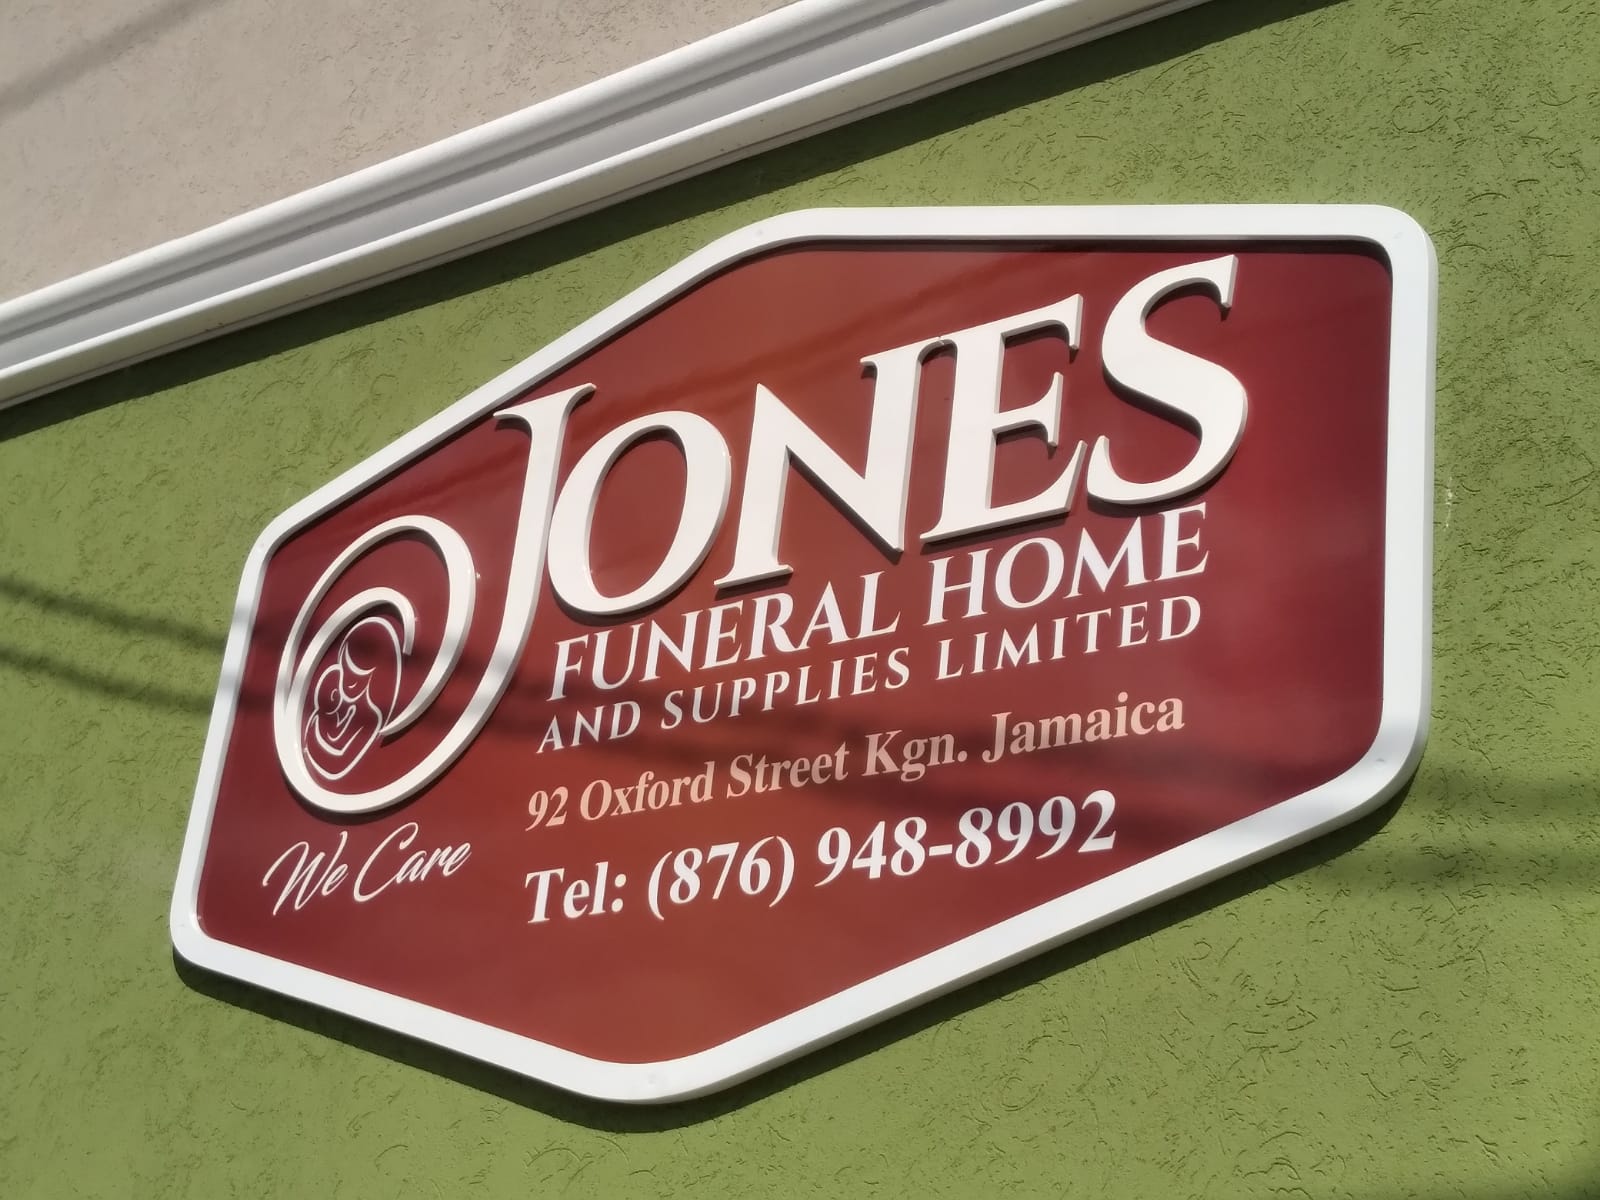 Jones Funeral Home & Supplies Ltd - Funeral Planning